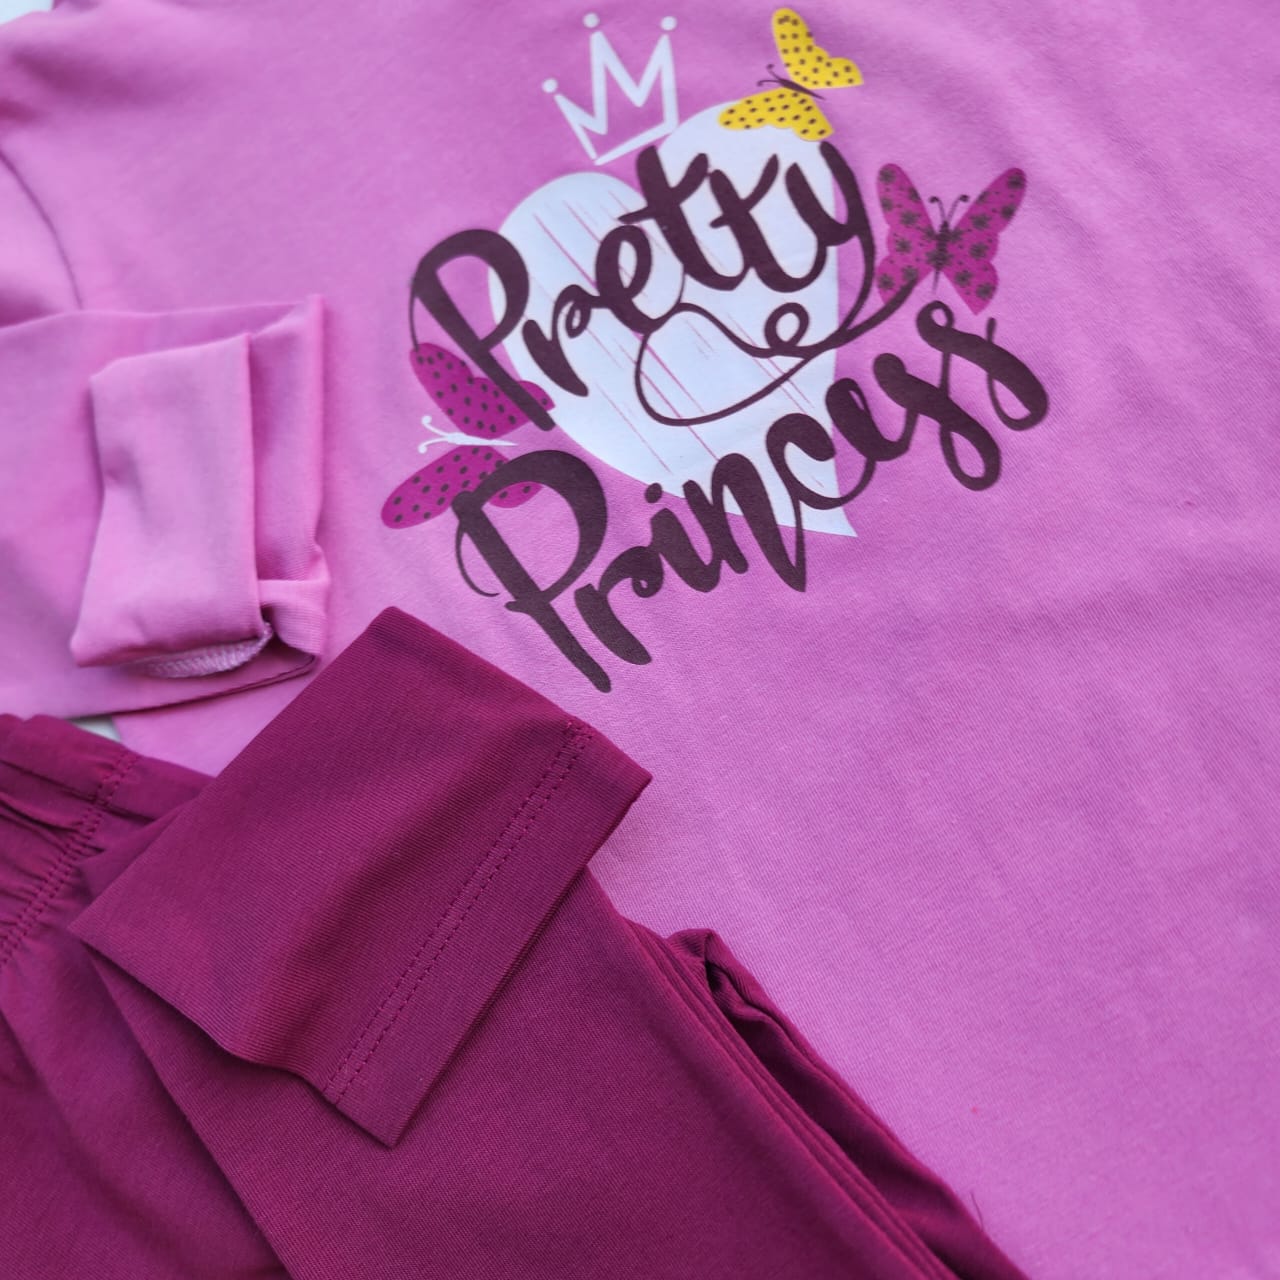 Pretty Princess Girls Cotton Set - Pretty Princess Girls Cotton Set - 3-4 Years / White/Cherry Pink - Macawi - Melymod